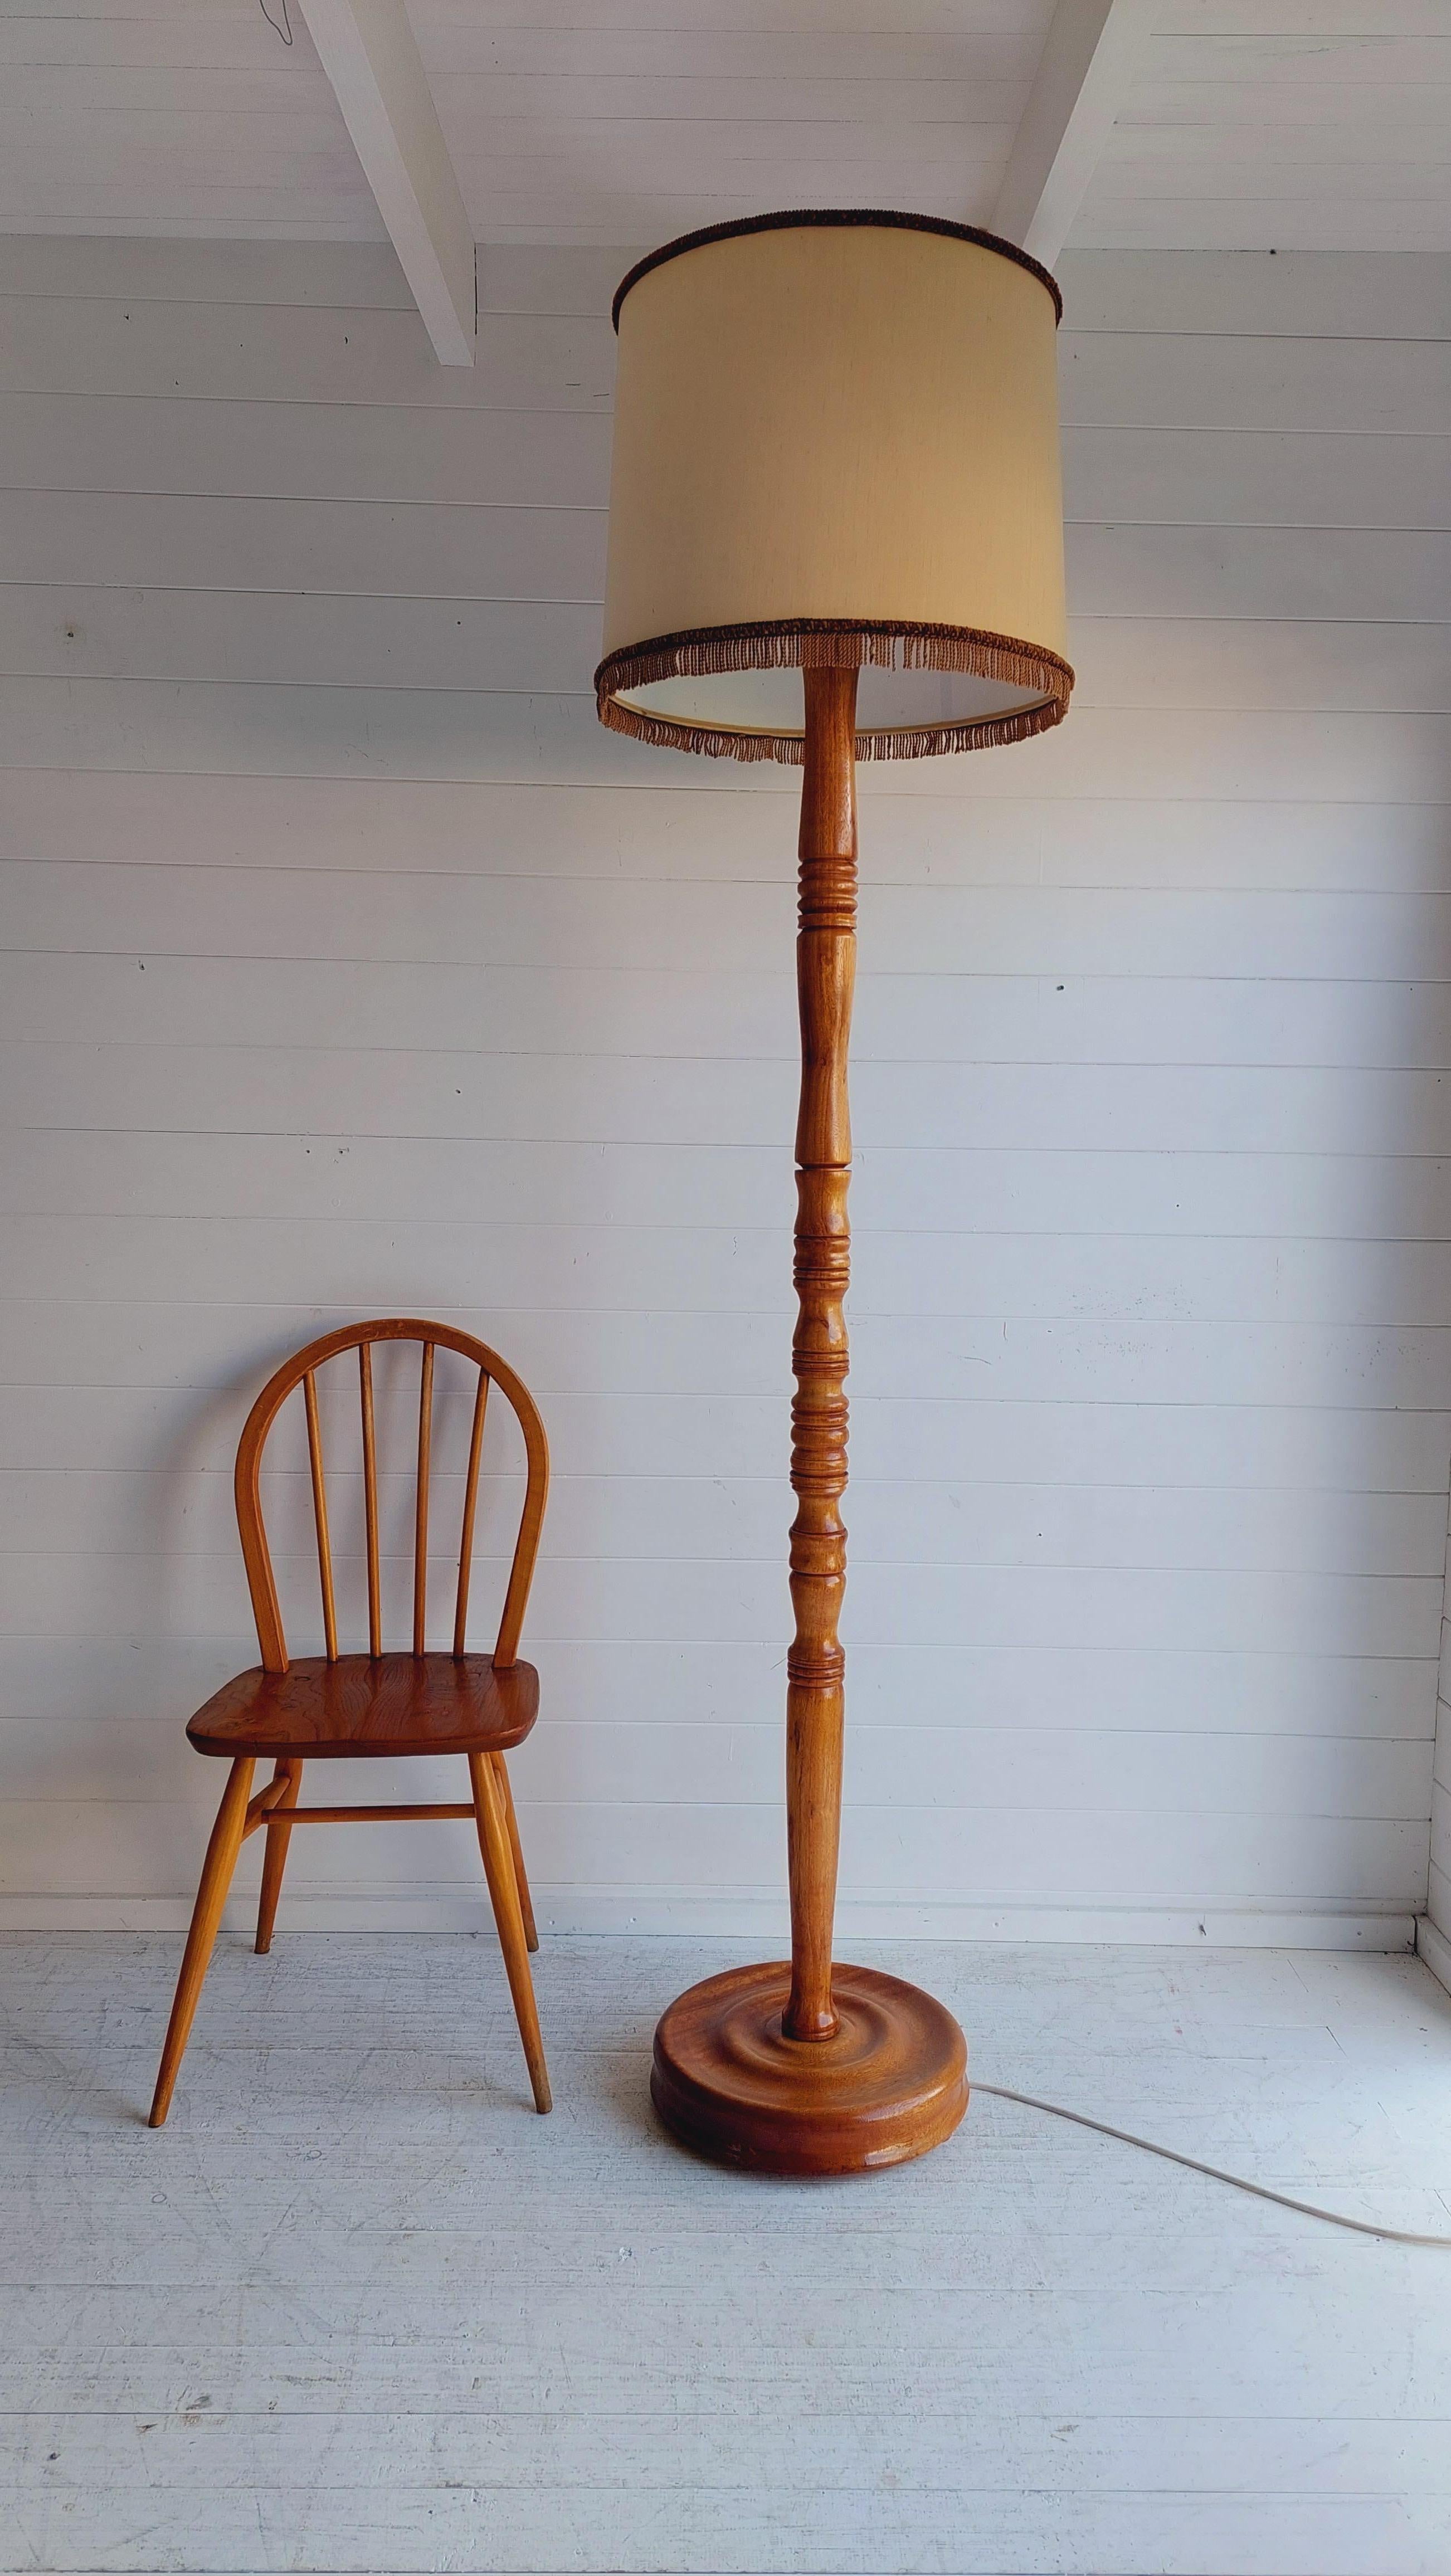 Lampadaire en bois ancien de très bonne qualité. 2m de haut
Nous sommes ravis de proposer à la vente ce superbe lampadaire ancien en bois de chêne datant des années 1920.

Un grand lampadaire en chêne britannique avec des détails élégants tournés.